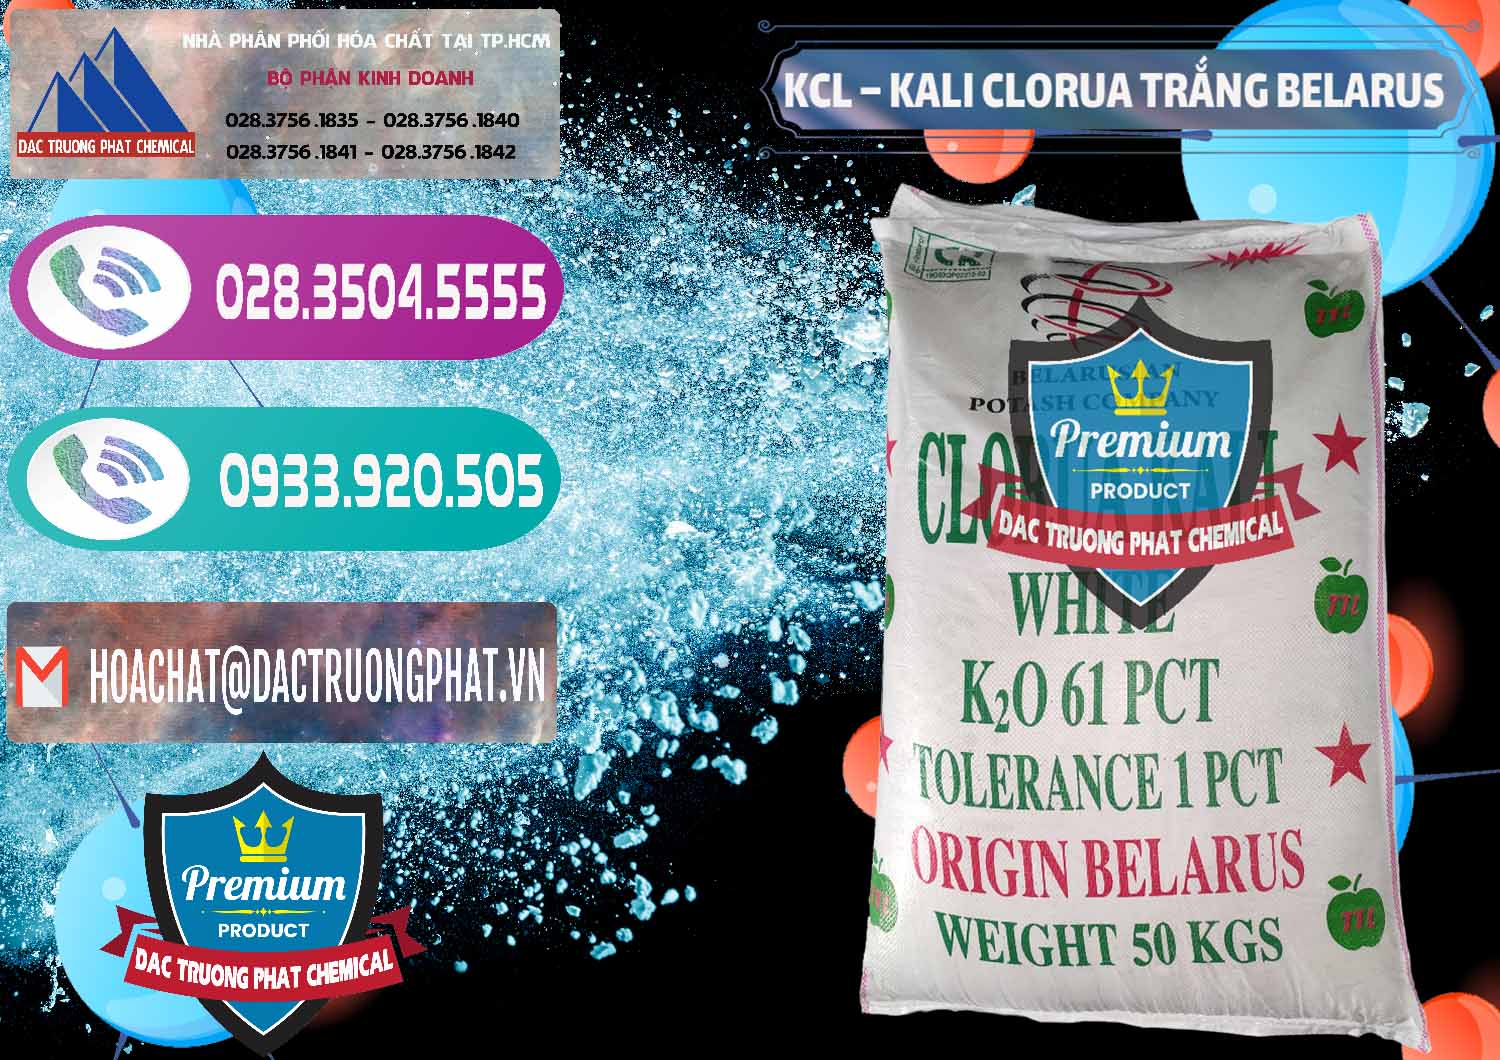 Nơi chuyên bán ( cung cấp ) KCL – Kali Clorua Trắng Belarus - 0085 - Cty chuyên kinh doanh và cung cấp hóa chất tại TP.HCM - hoachatxulynuoc.com